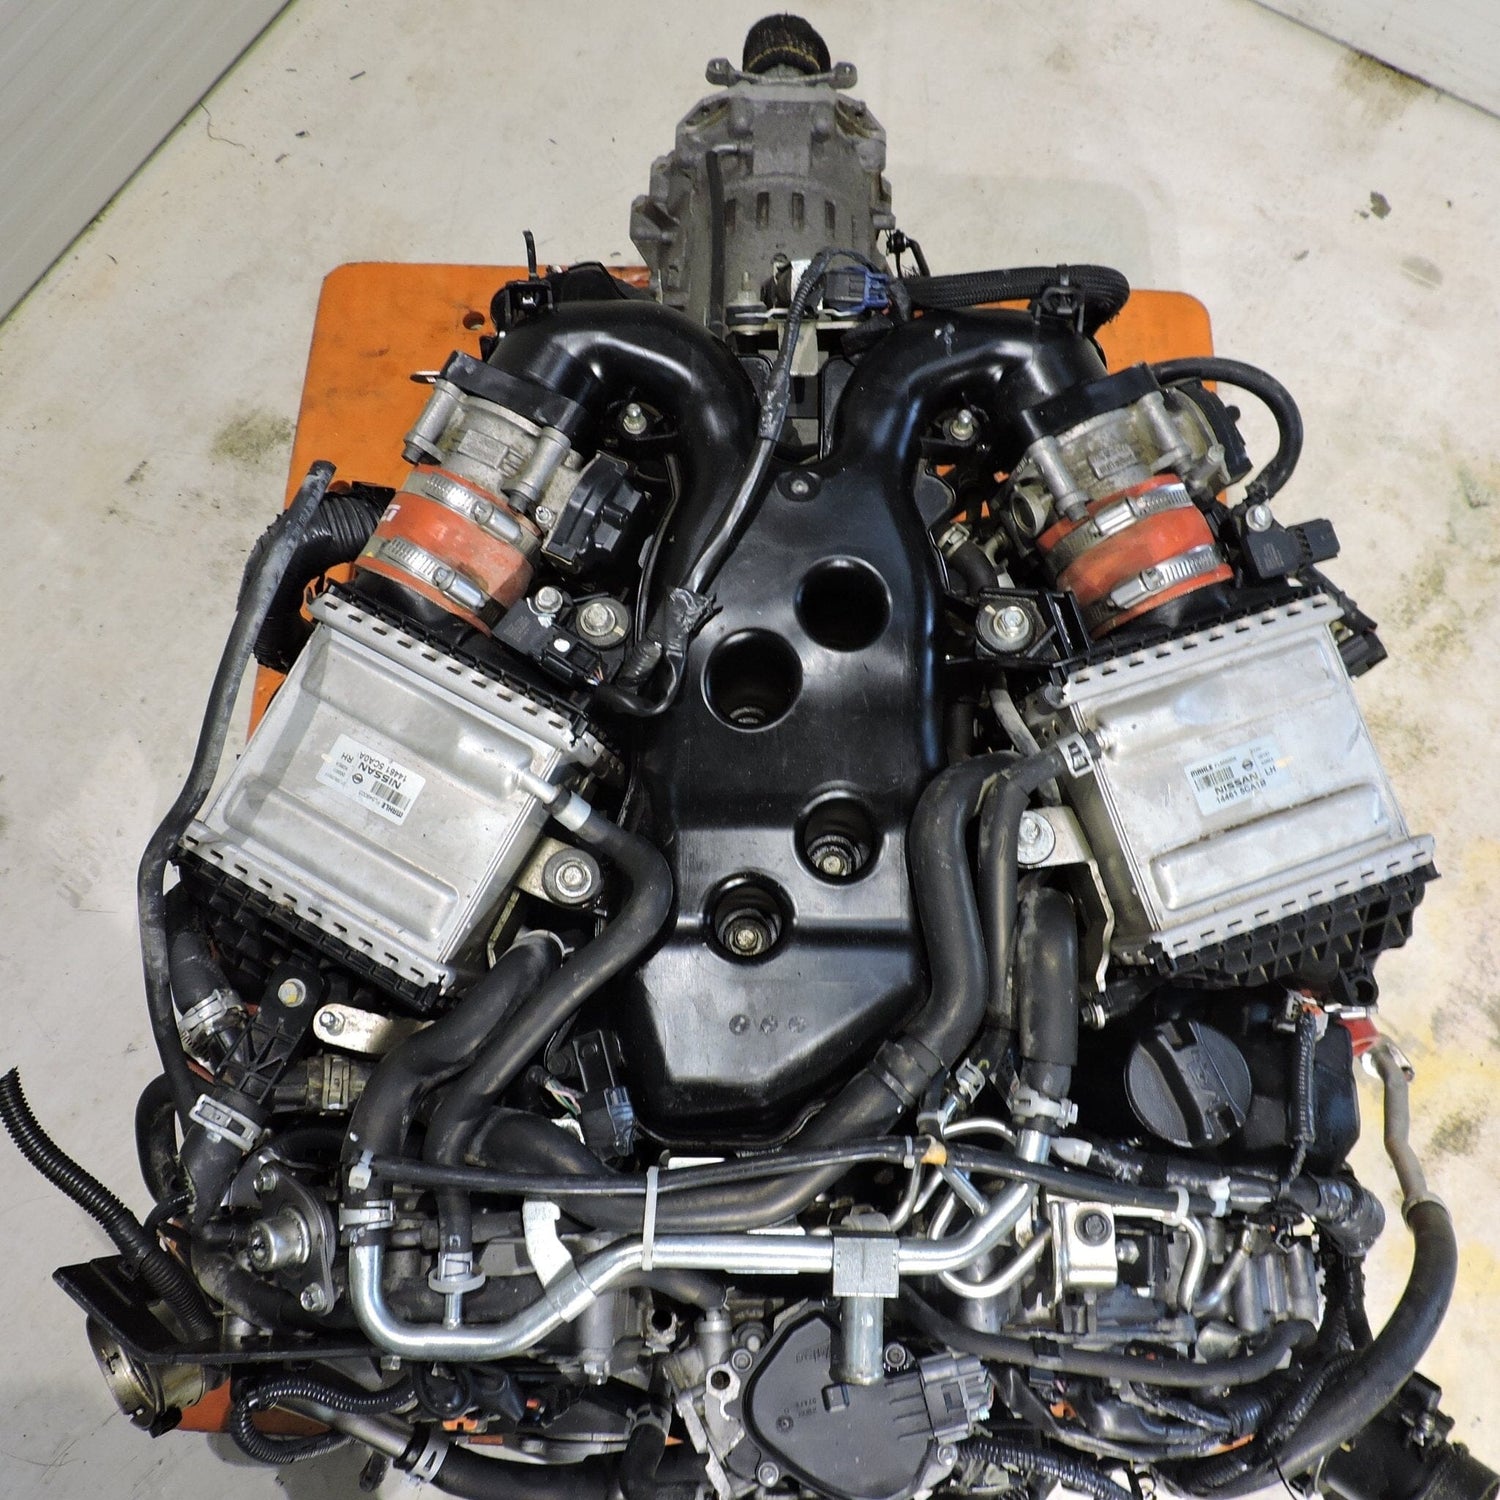 Infiniti Q50 Q60 3.0L JDM Twin Turbo V6 Rwd Jdm Engine Automatic Transmission - VR30DDTT